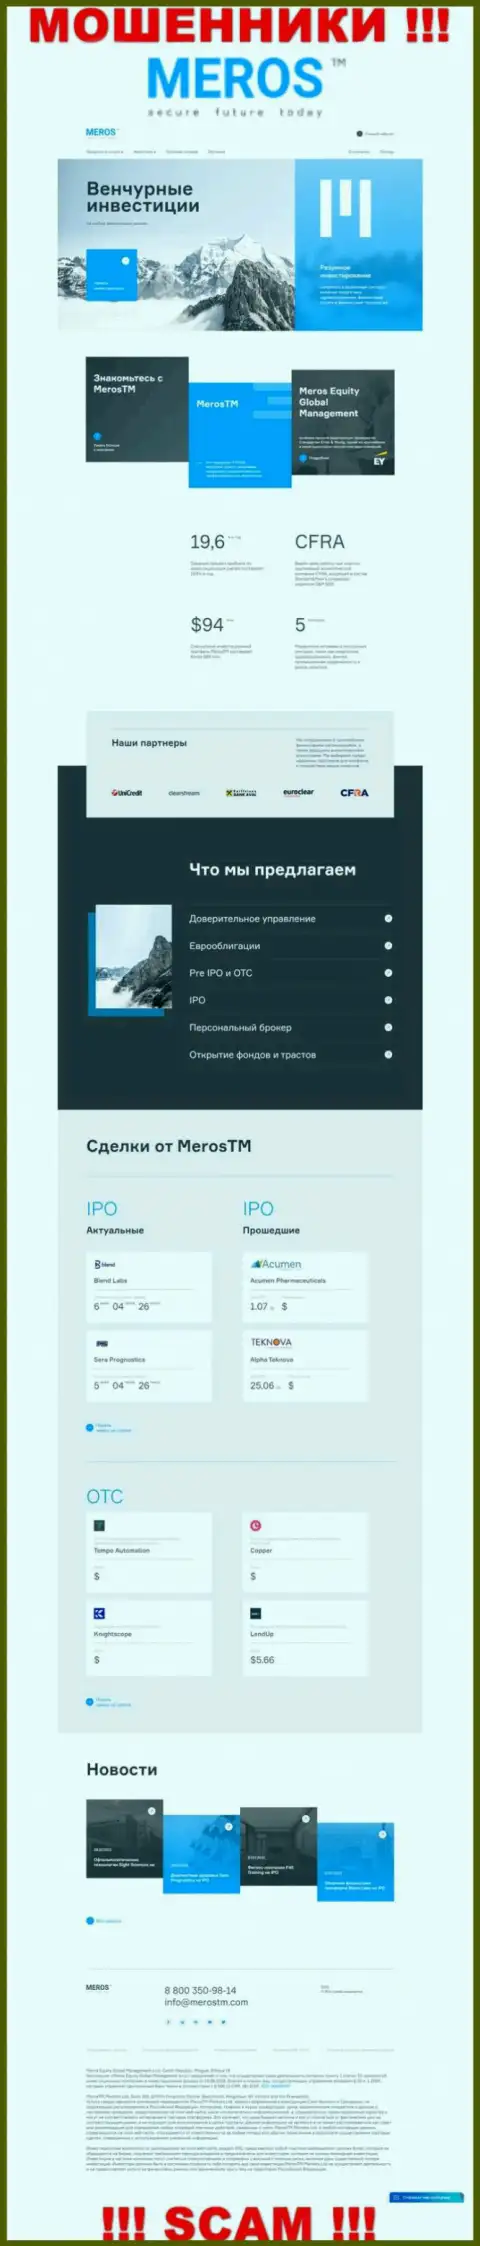 Обзор официального ресурса мошенников MerosMT Markets LLC